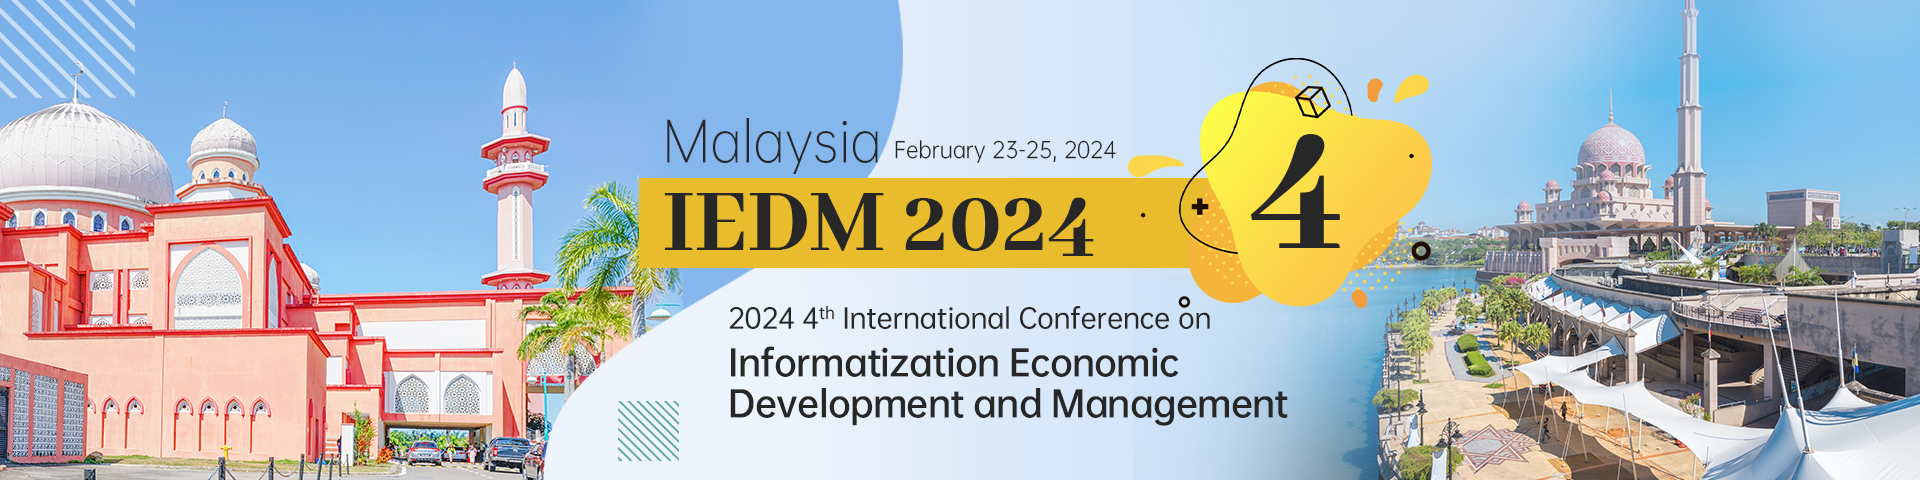 2024 4th International Conference on Informatization Economic Development and Management (IEDM 2024), Kuala Lumpur, Malaysia